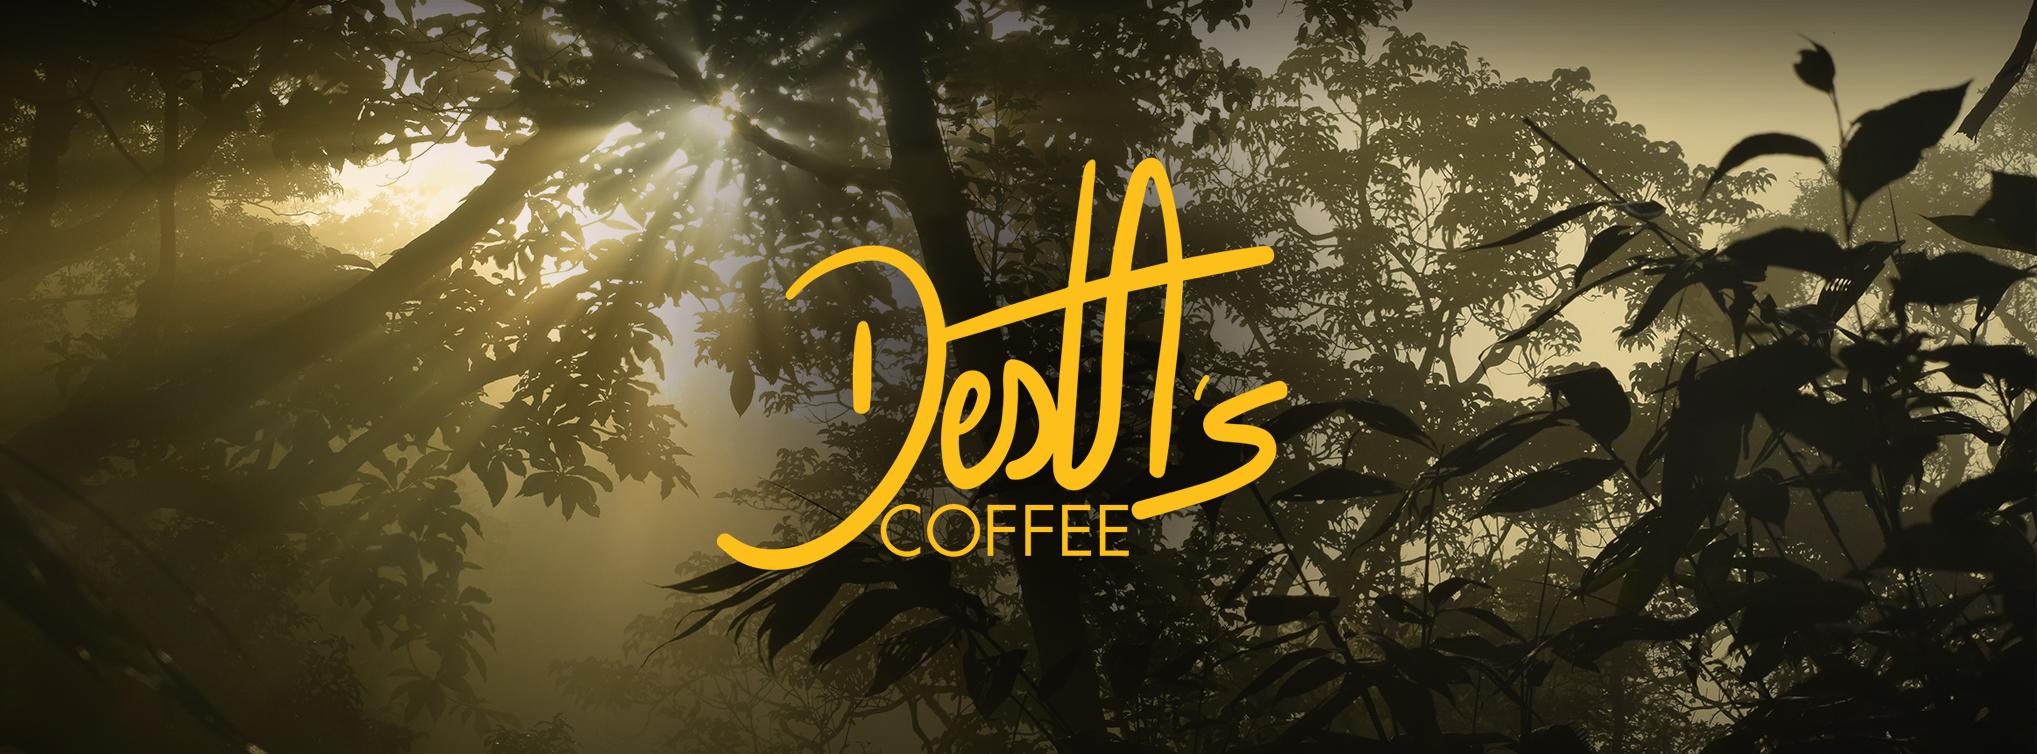 Desta's Coffee Jungle Farm